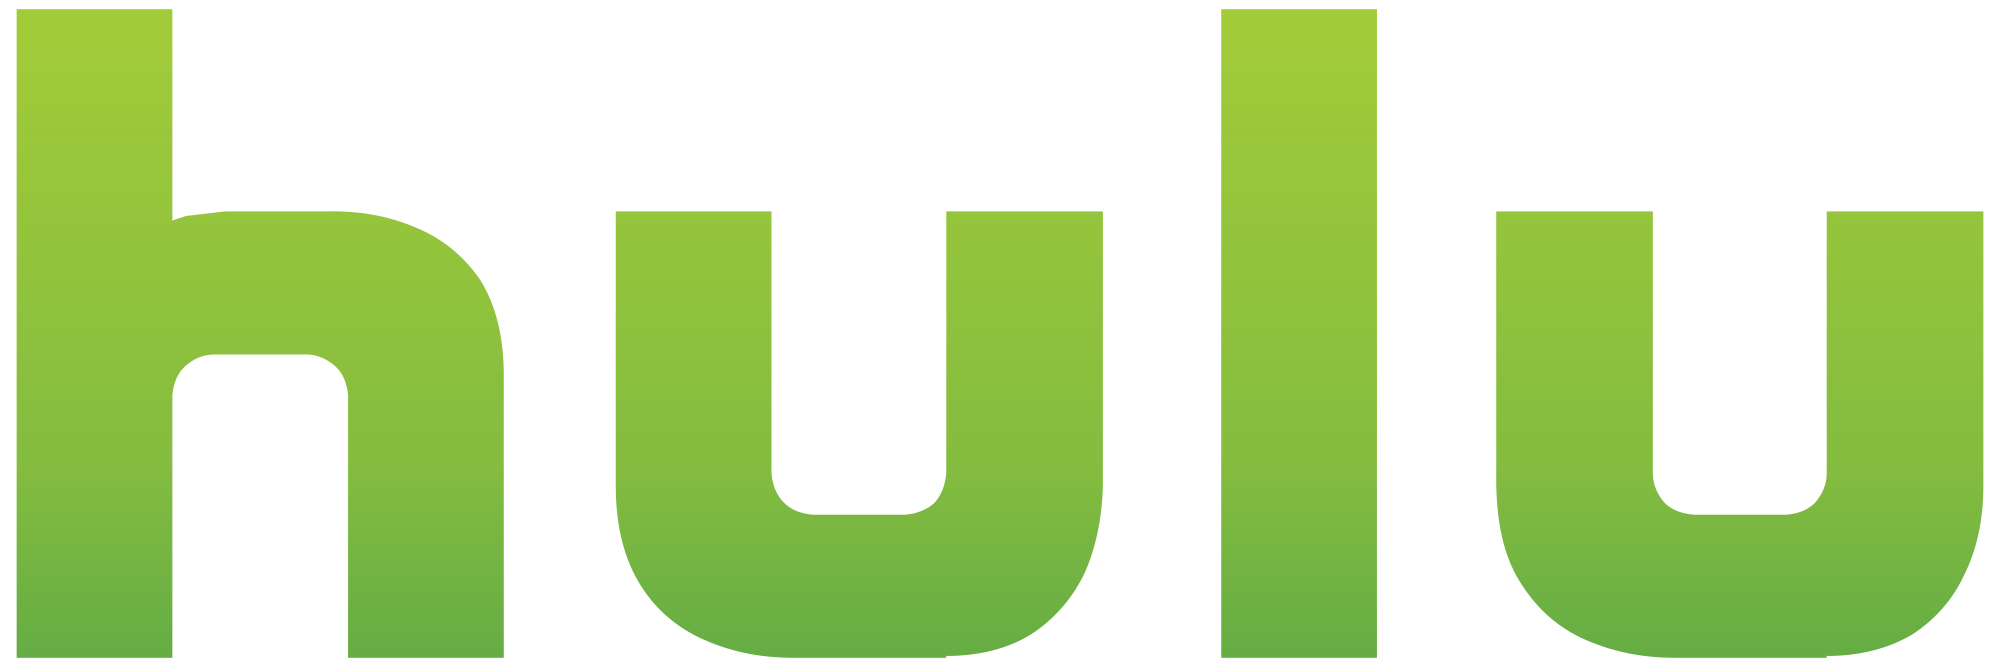 Hulu is a PLANNET building tech design client